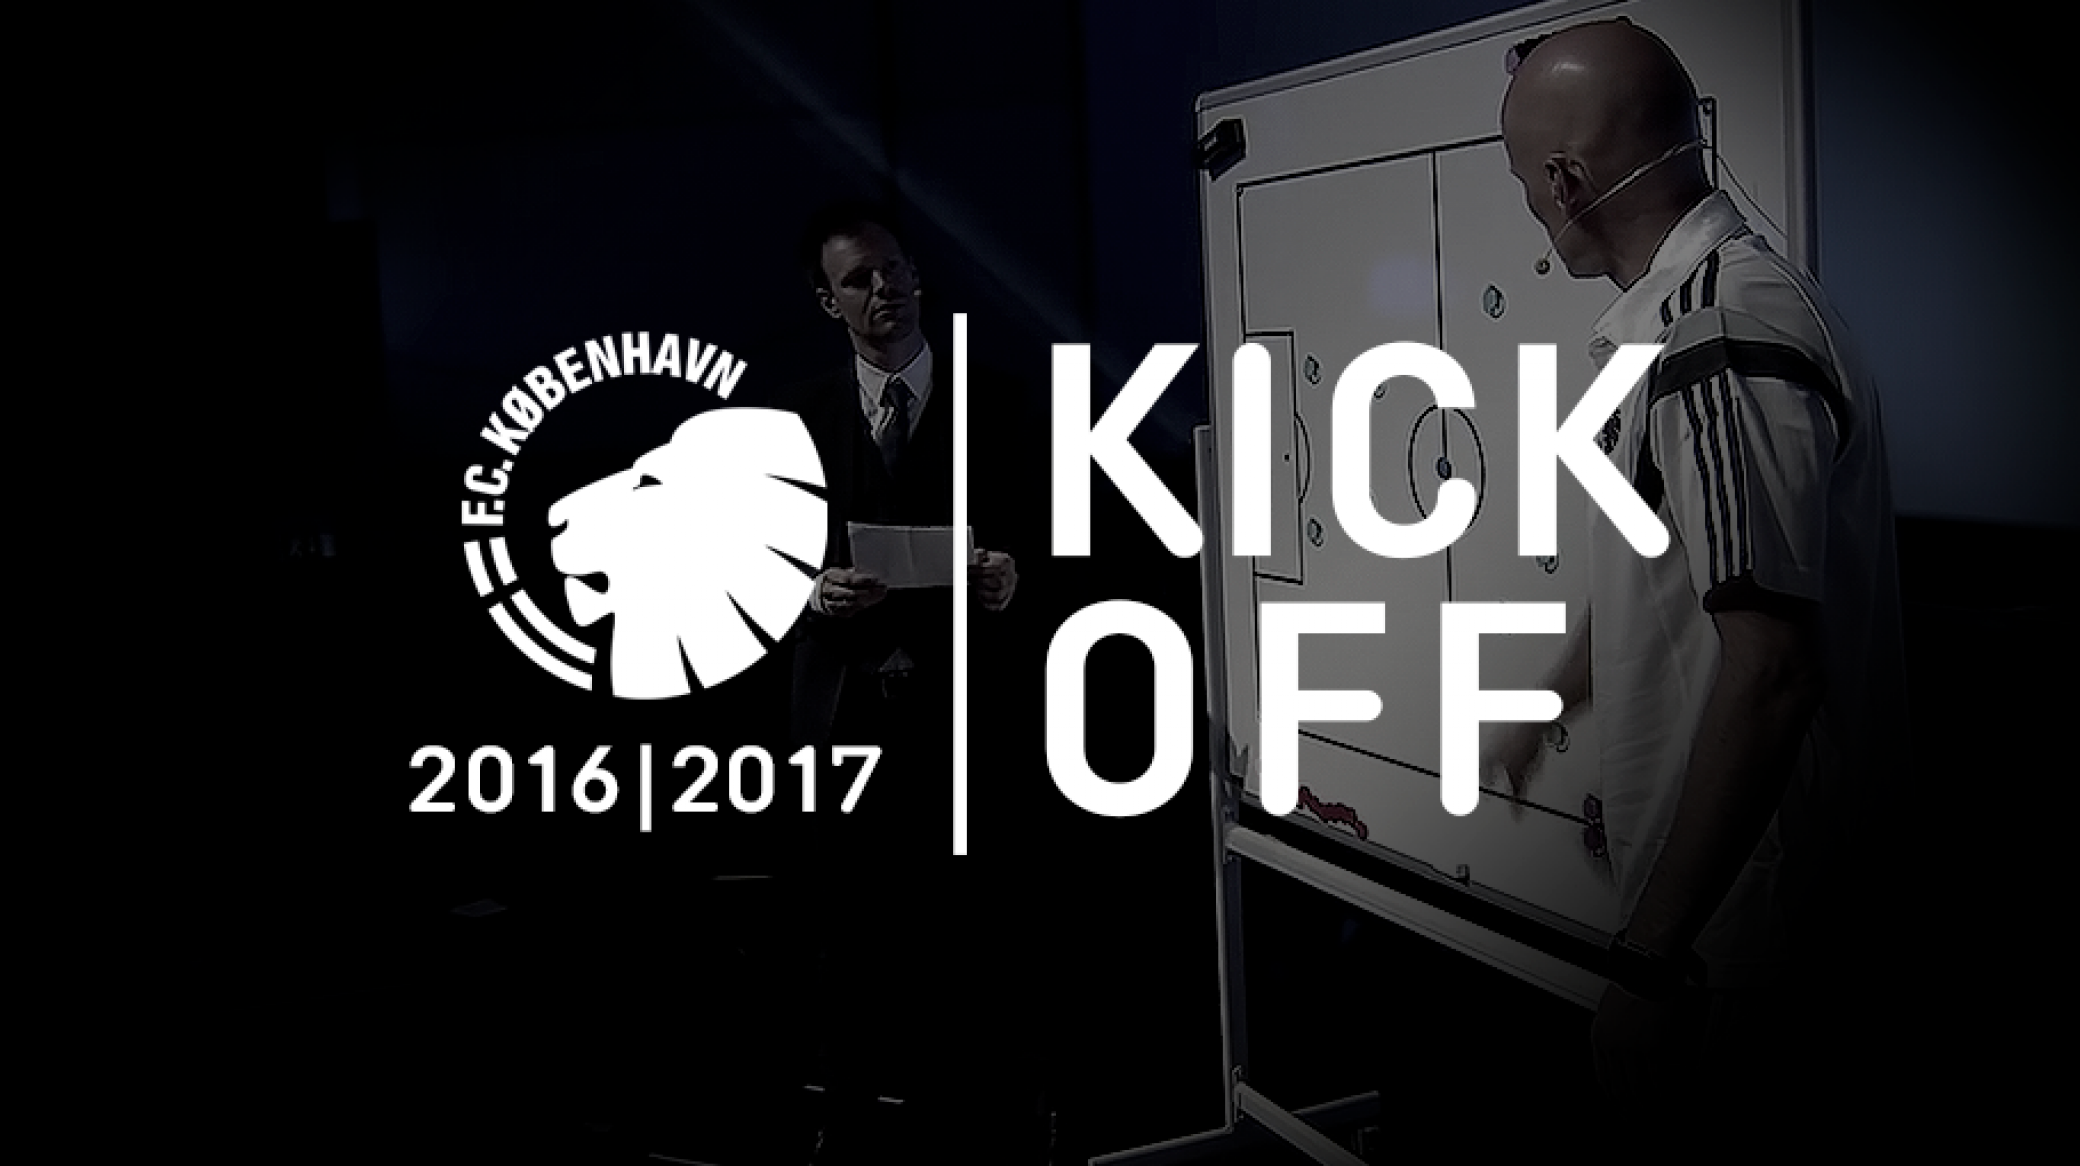 Special guest til Kick Off 2016